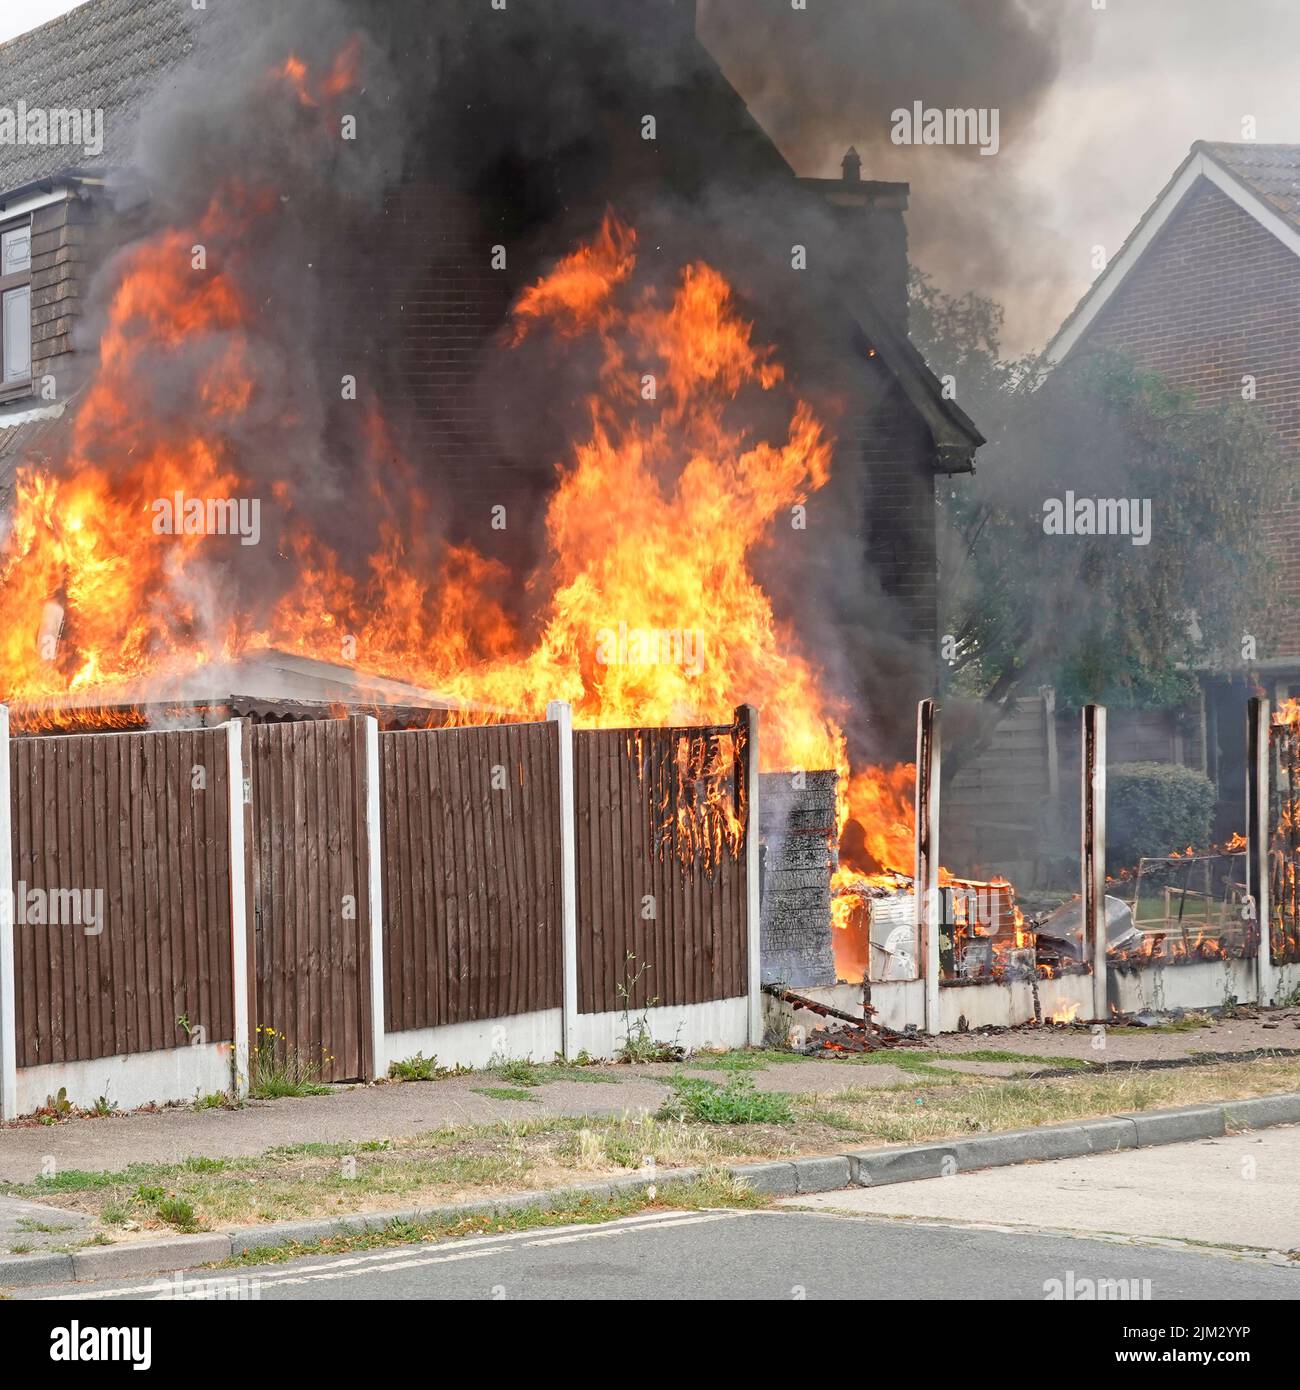 Les flammes de divers articles ménagers stockés à l'extérieur près de la clôture en bois s'enflamment lors de la chaleur brûrante de l'été incendiant contre le mur de la maison Royaume-Uni Banque D'Images